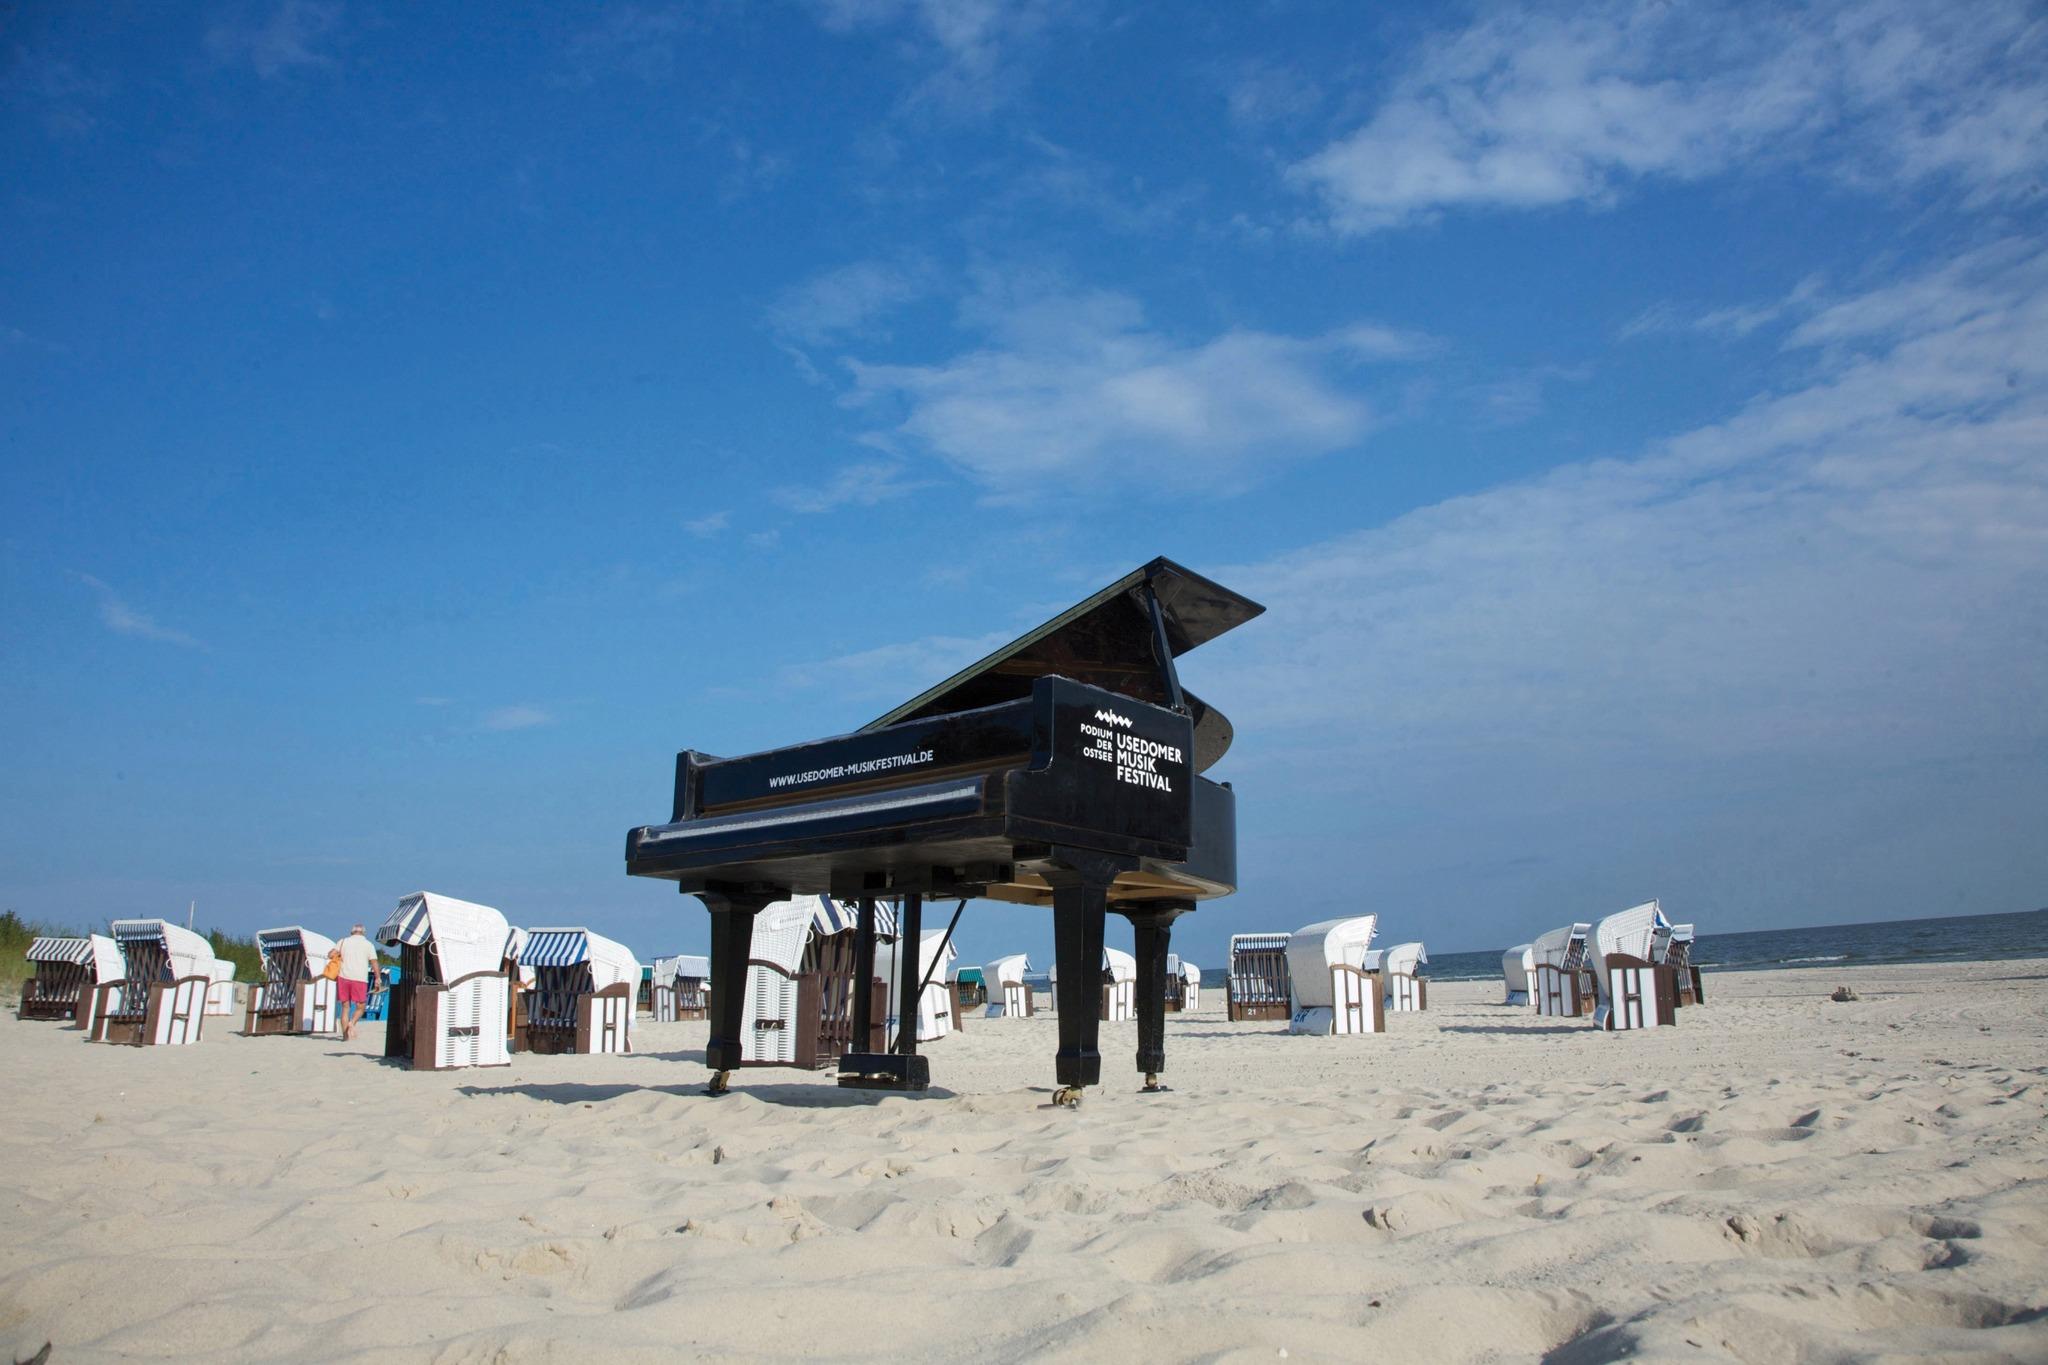 Konzertflügel am Strand mit Schriftzug "Usedomer Musikfestival"